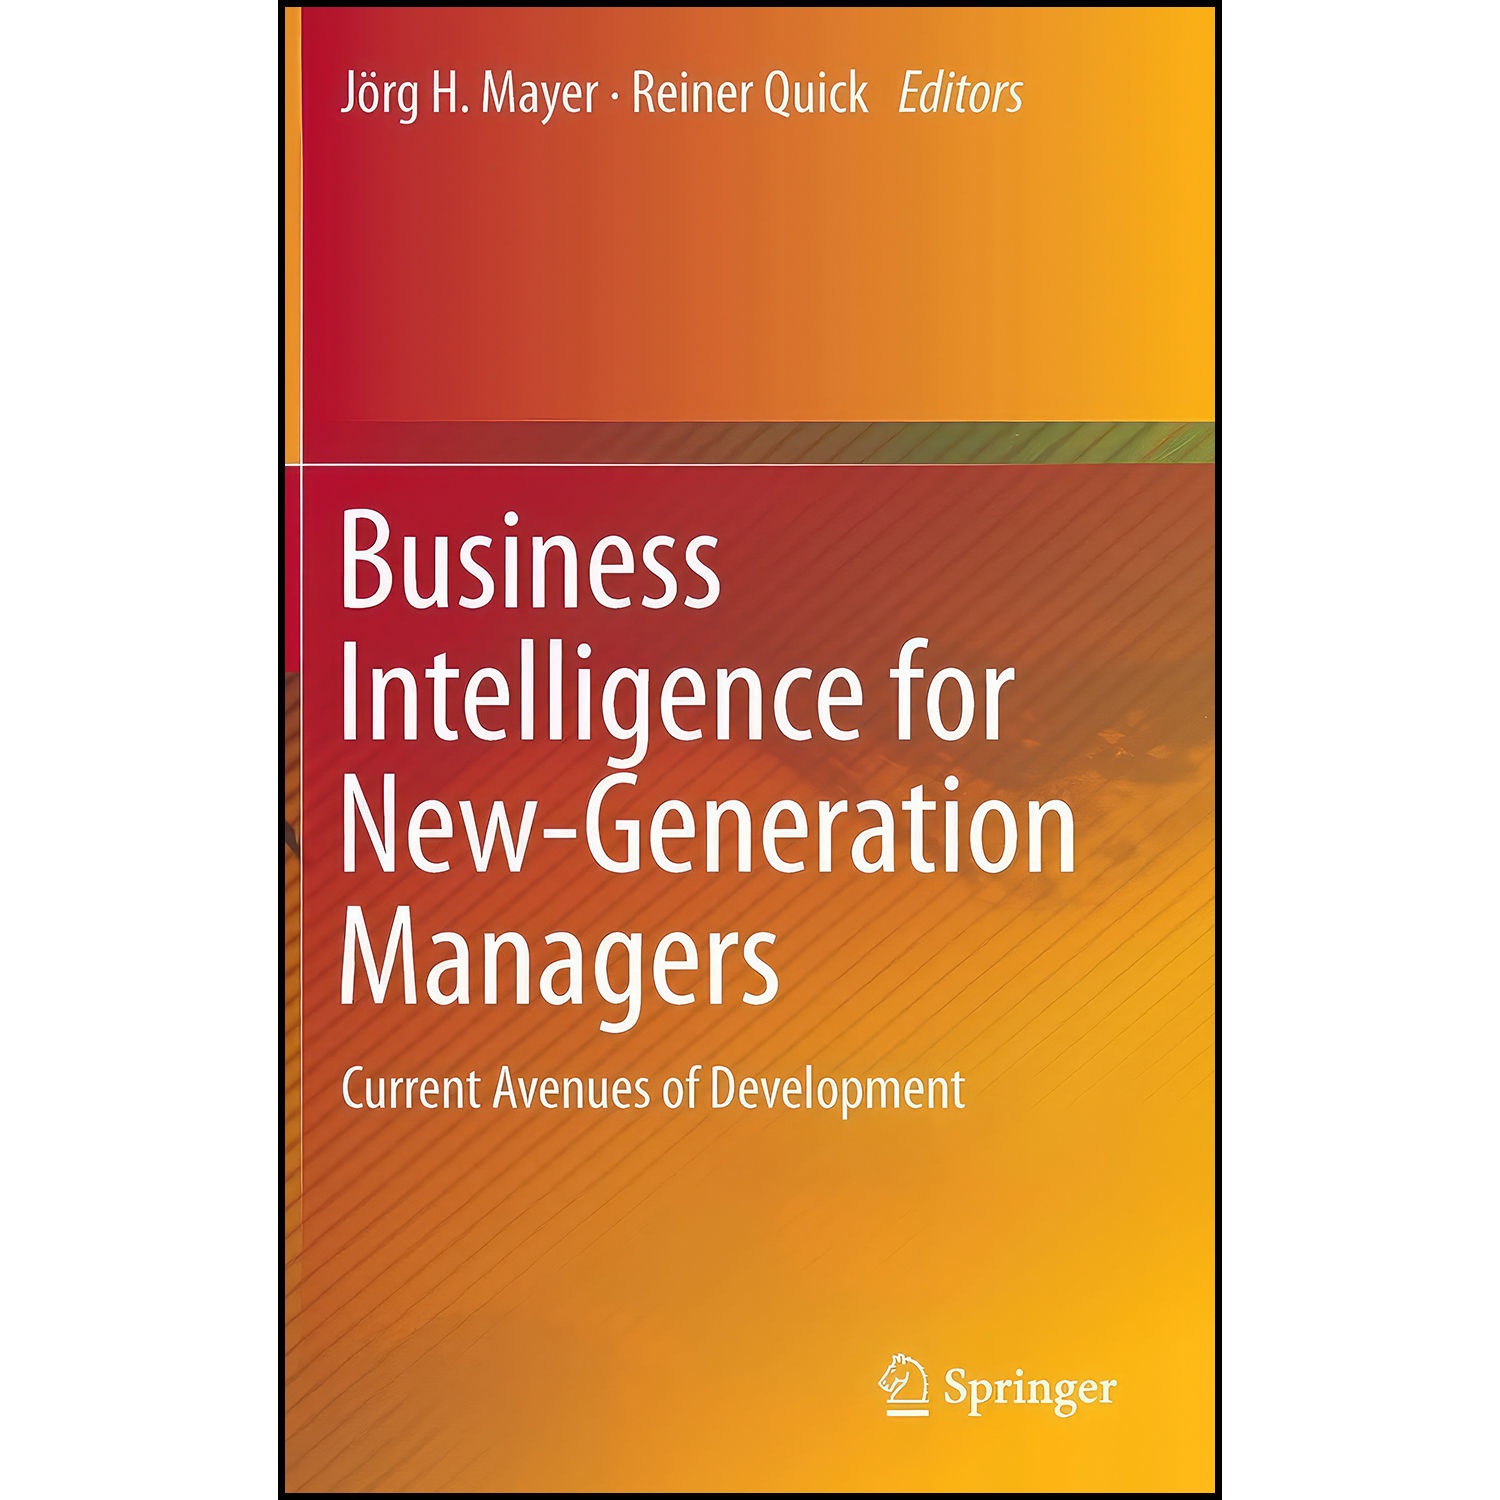 کتاب Business Intelligence for New-Generation Managers اثر J ouml rg H. Mayer and Reiner Quick انتشارات Springer